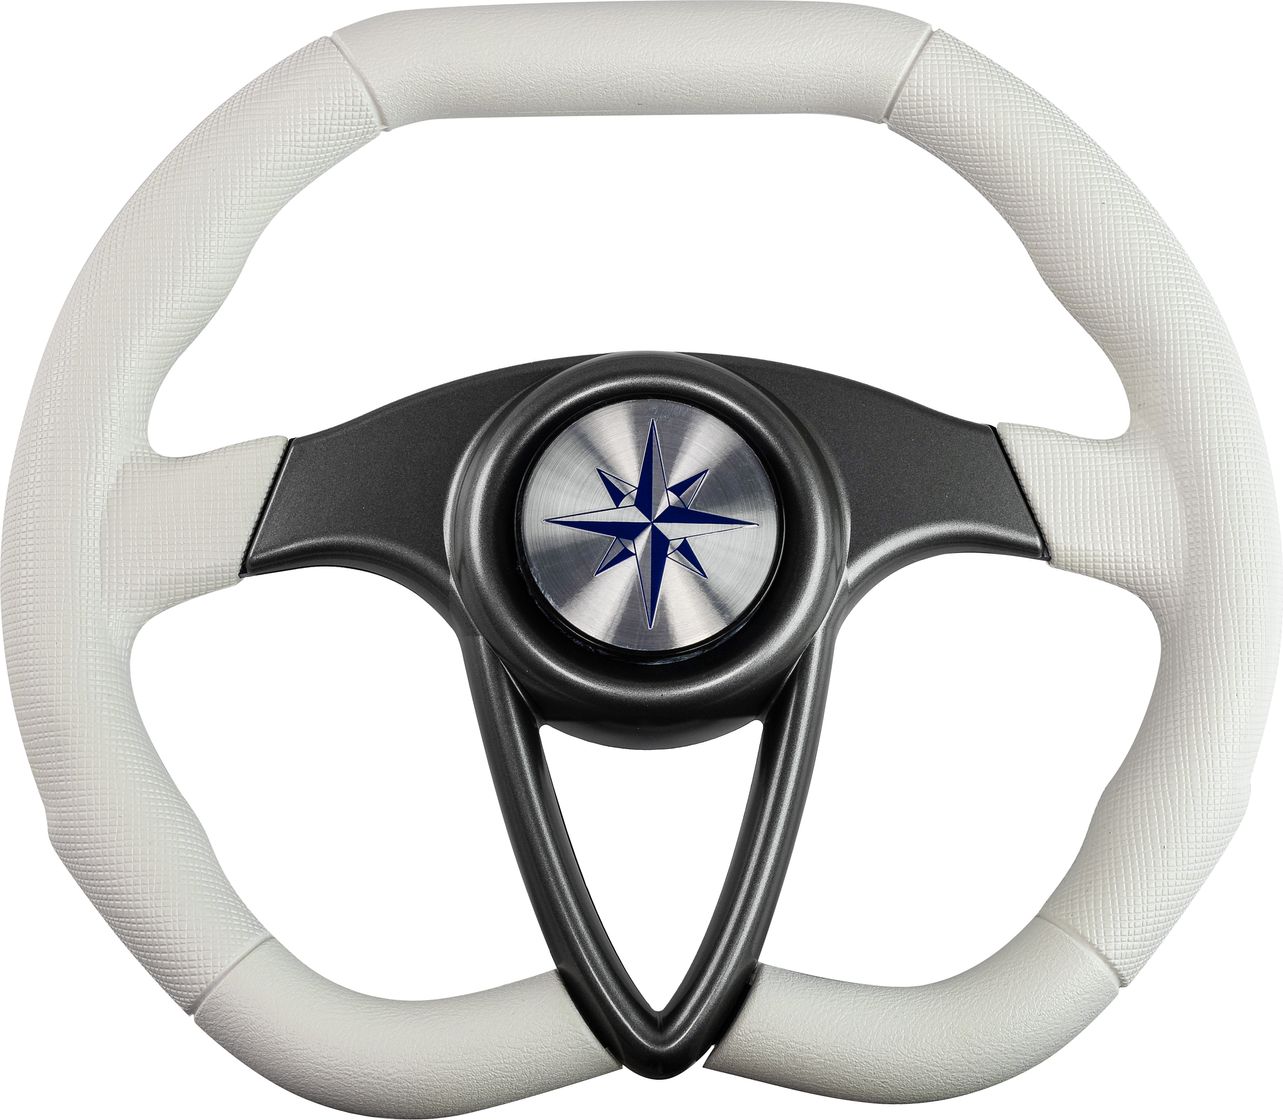 Рулевое колесо BARRACUDA обод белый, спицы серебряные д. 350 мм VN135002-08 рулевое колесо pegaso обод белый спицы серебряные д 300 мм vn13327 08